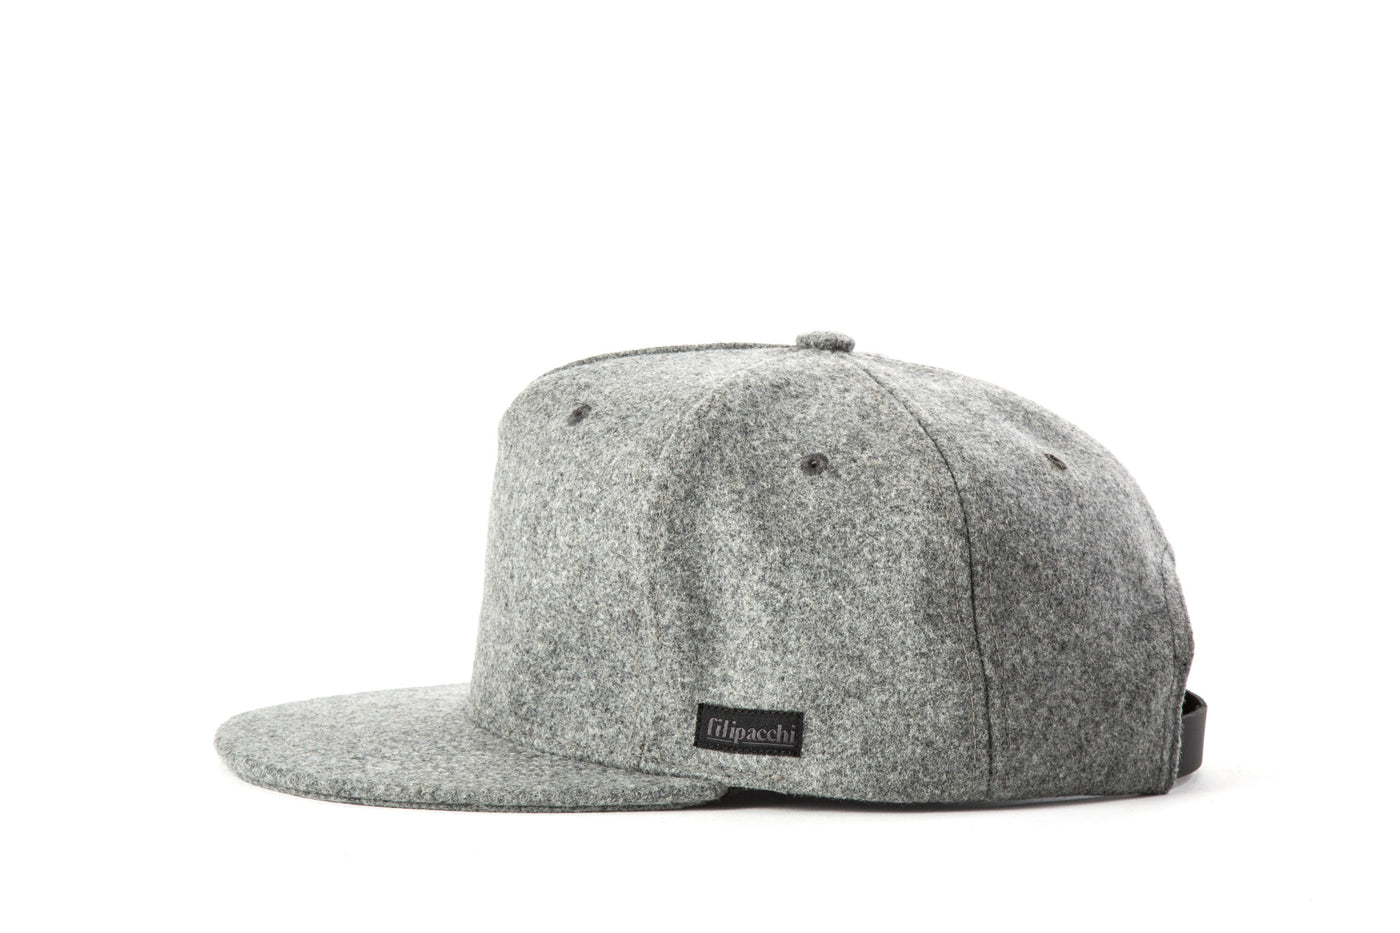 Filipacchi Gray Wool Trucker Hat